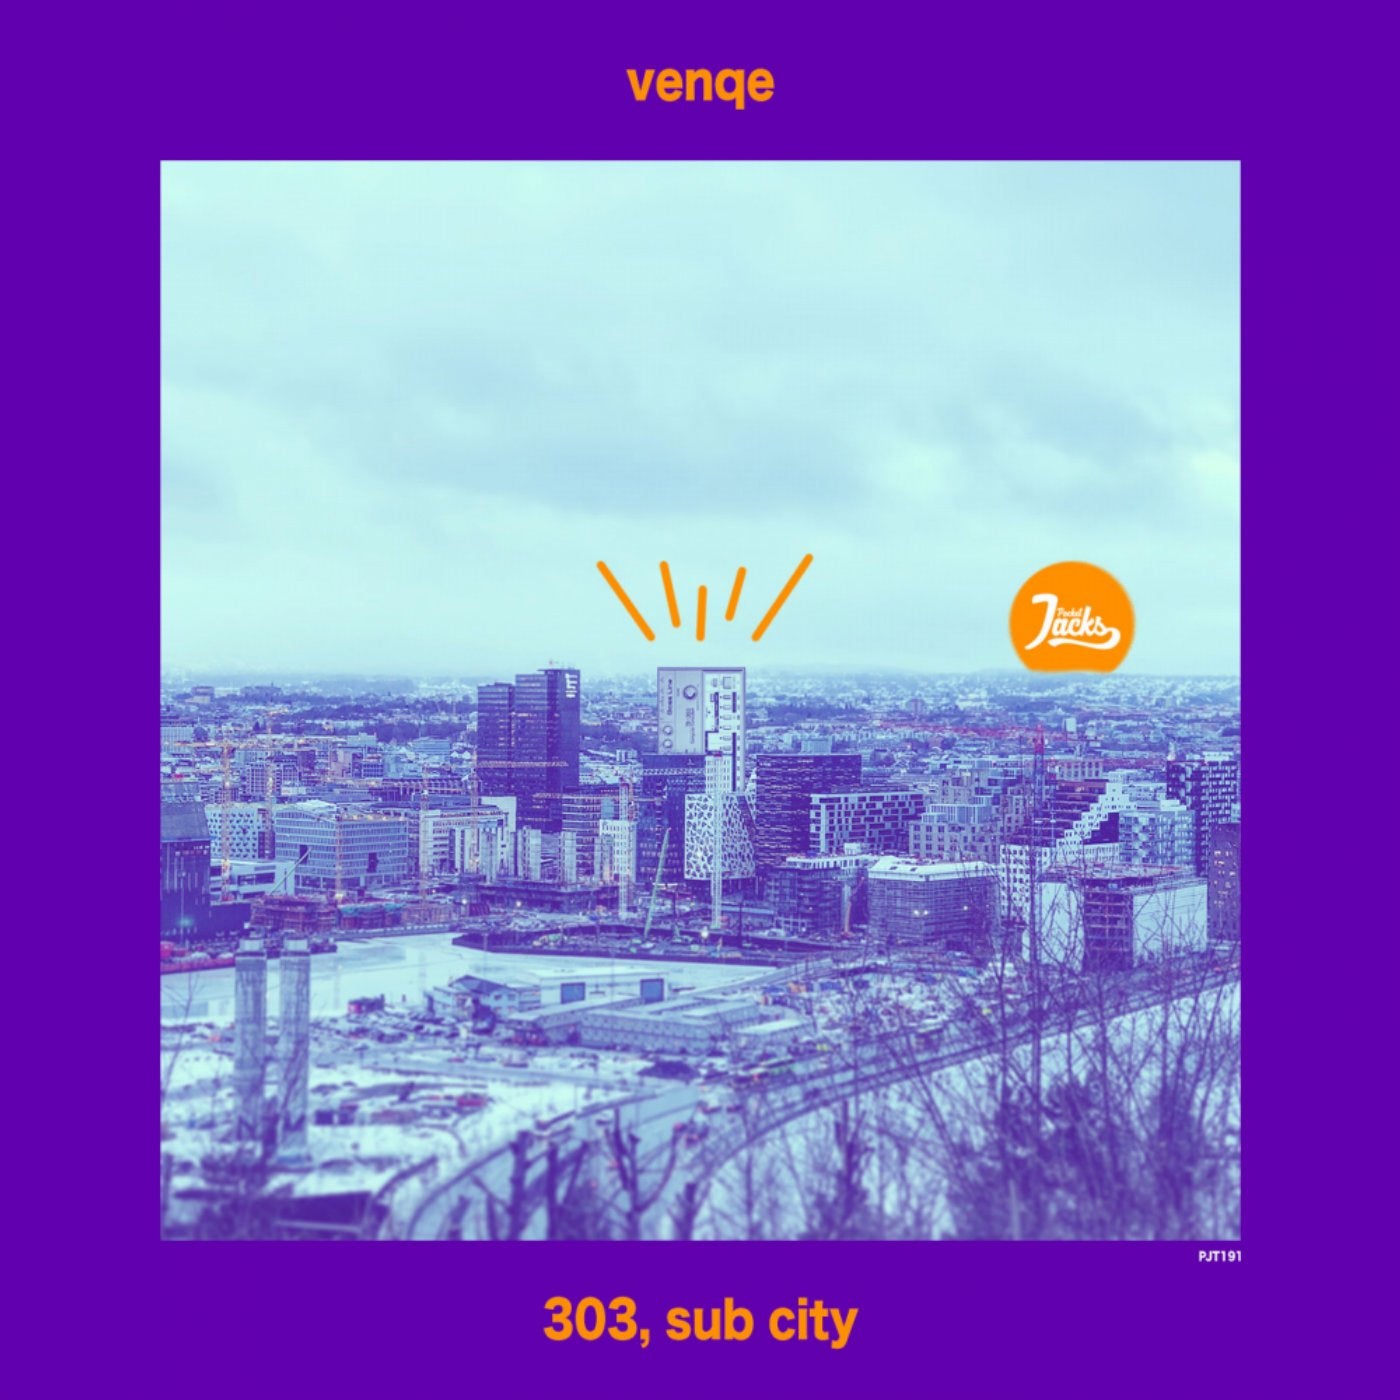 303, sub city